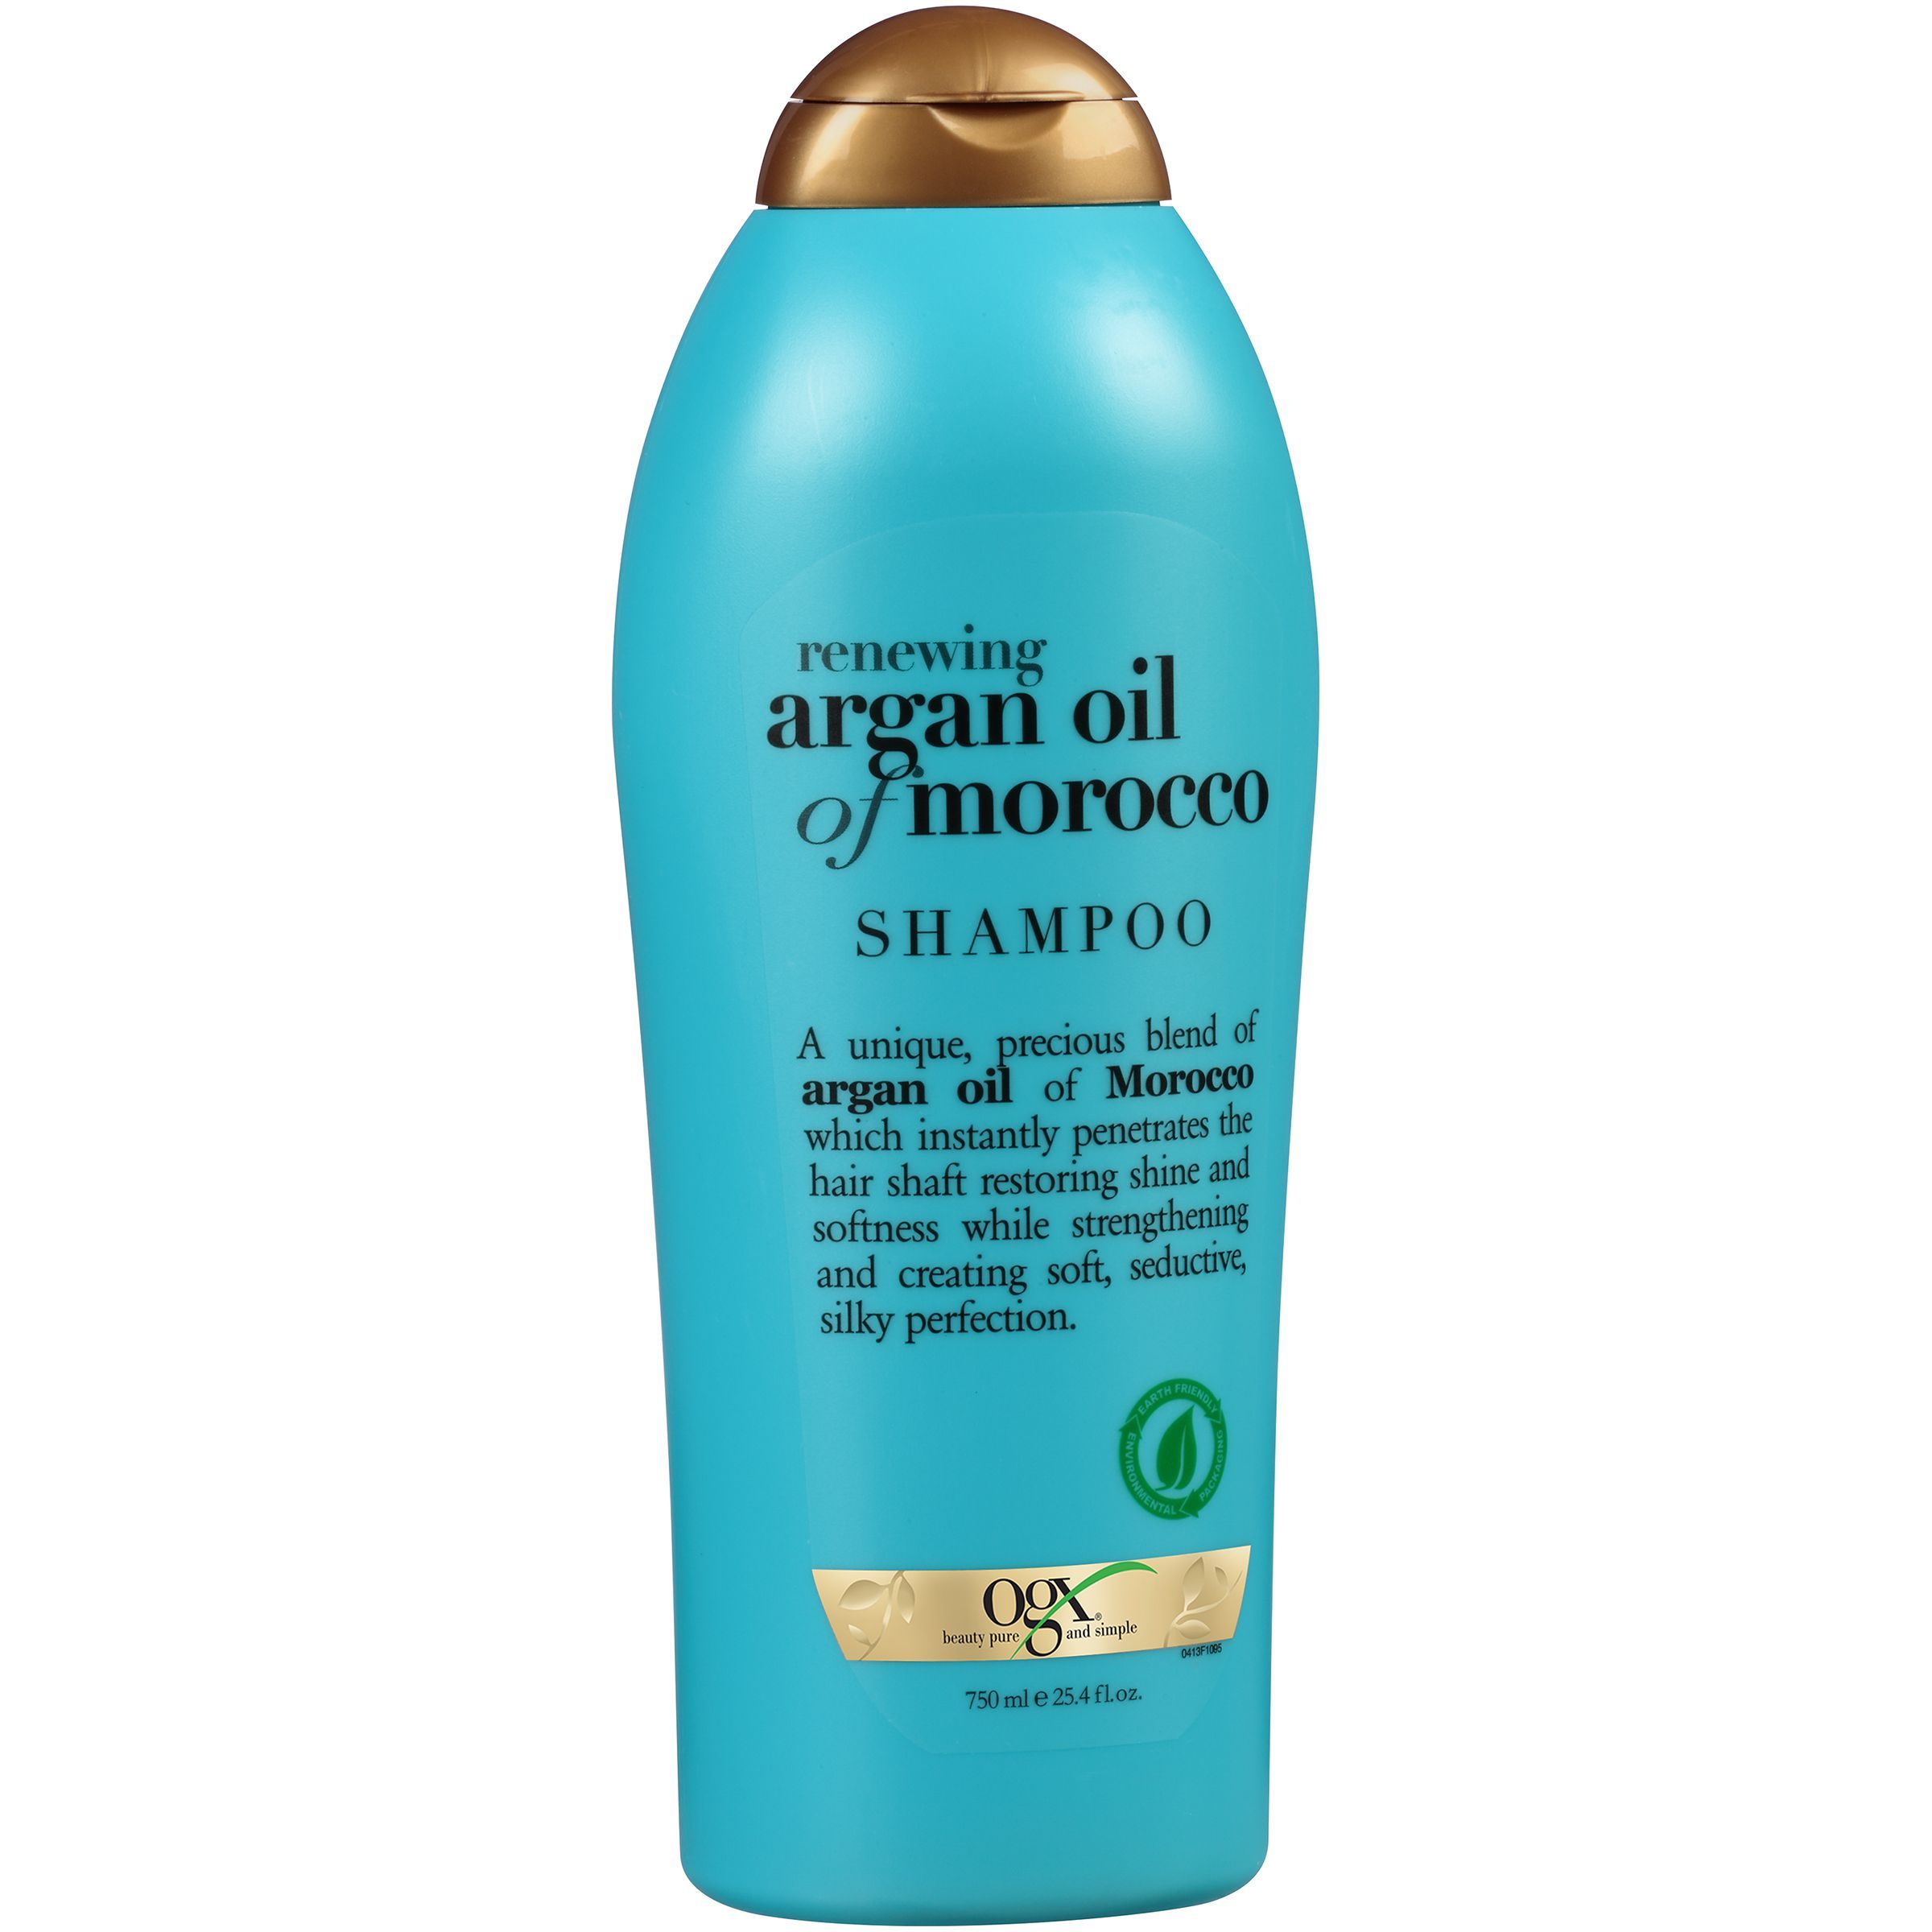 Argan Oil of Morocco Conditioner